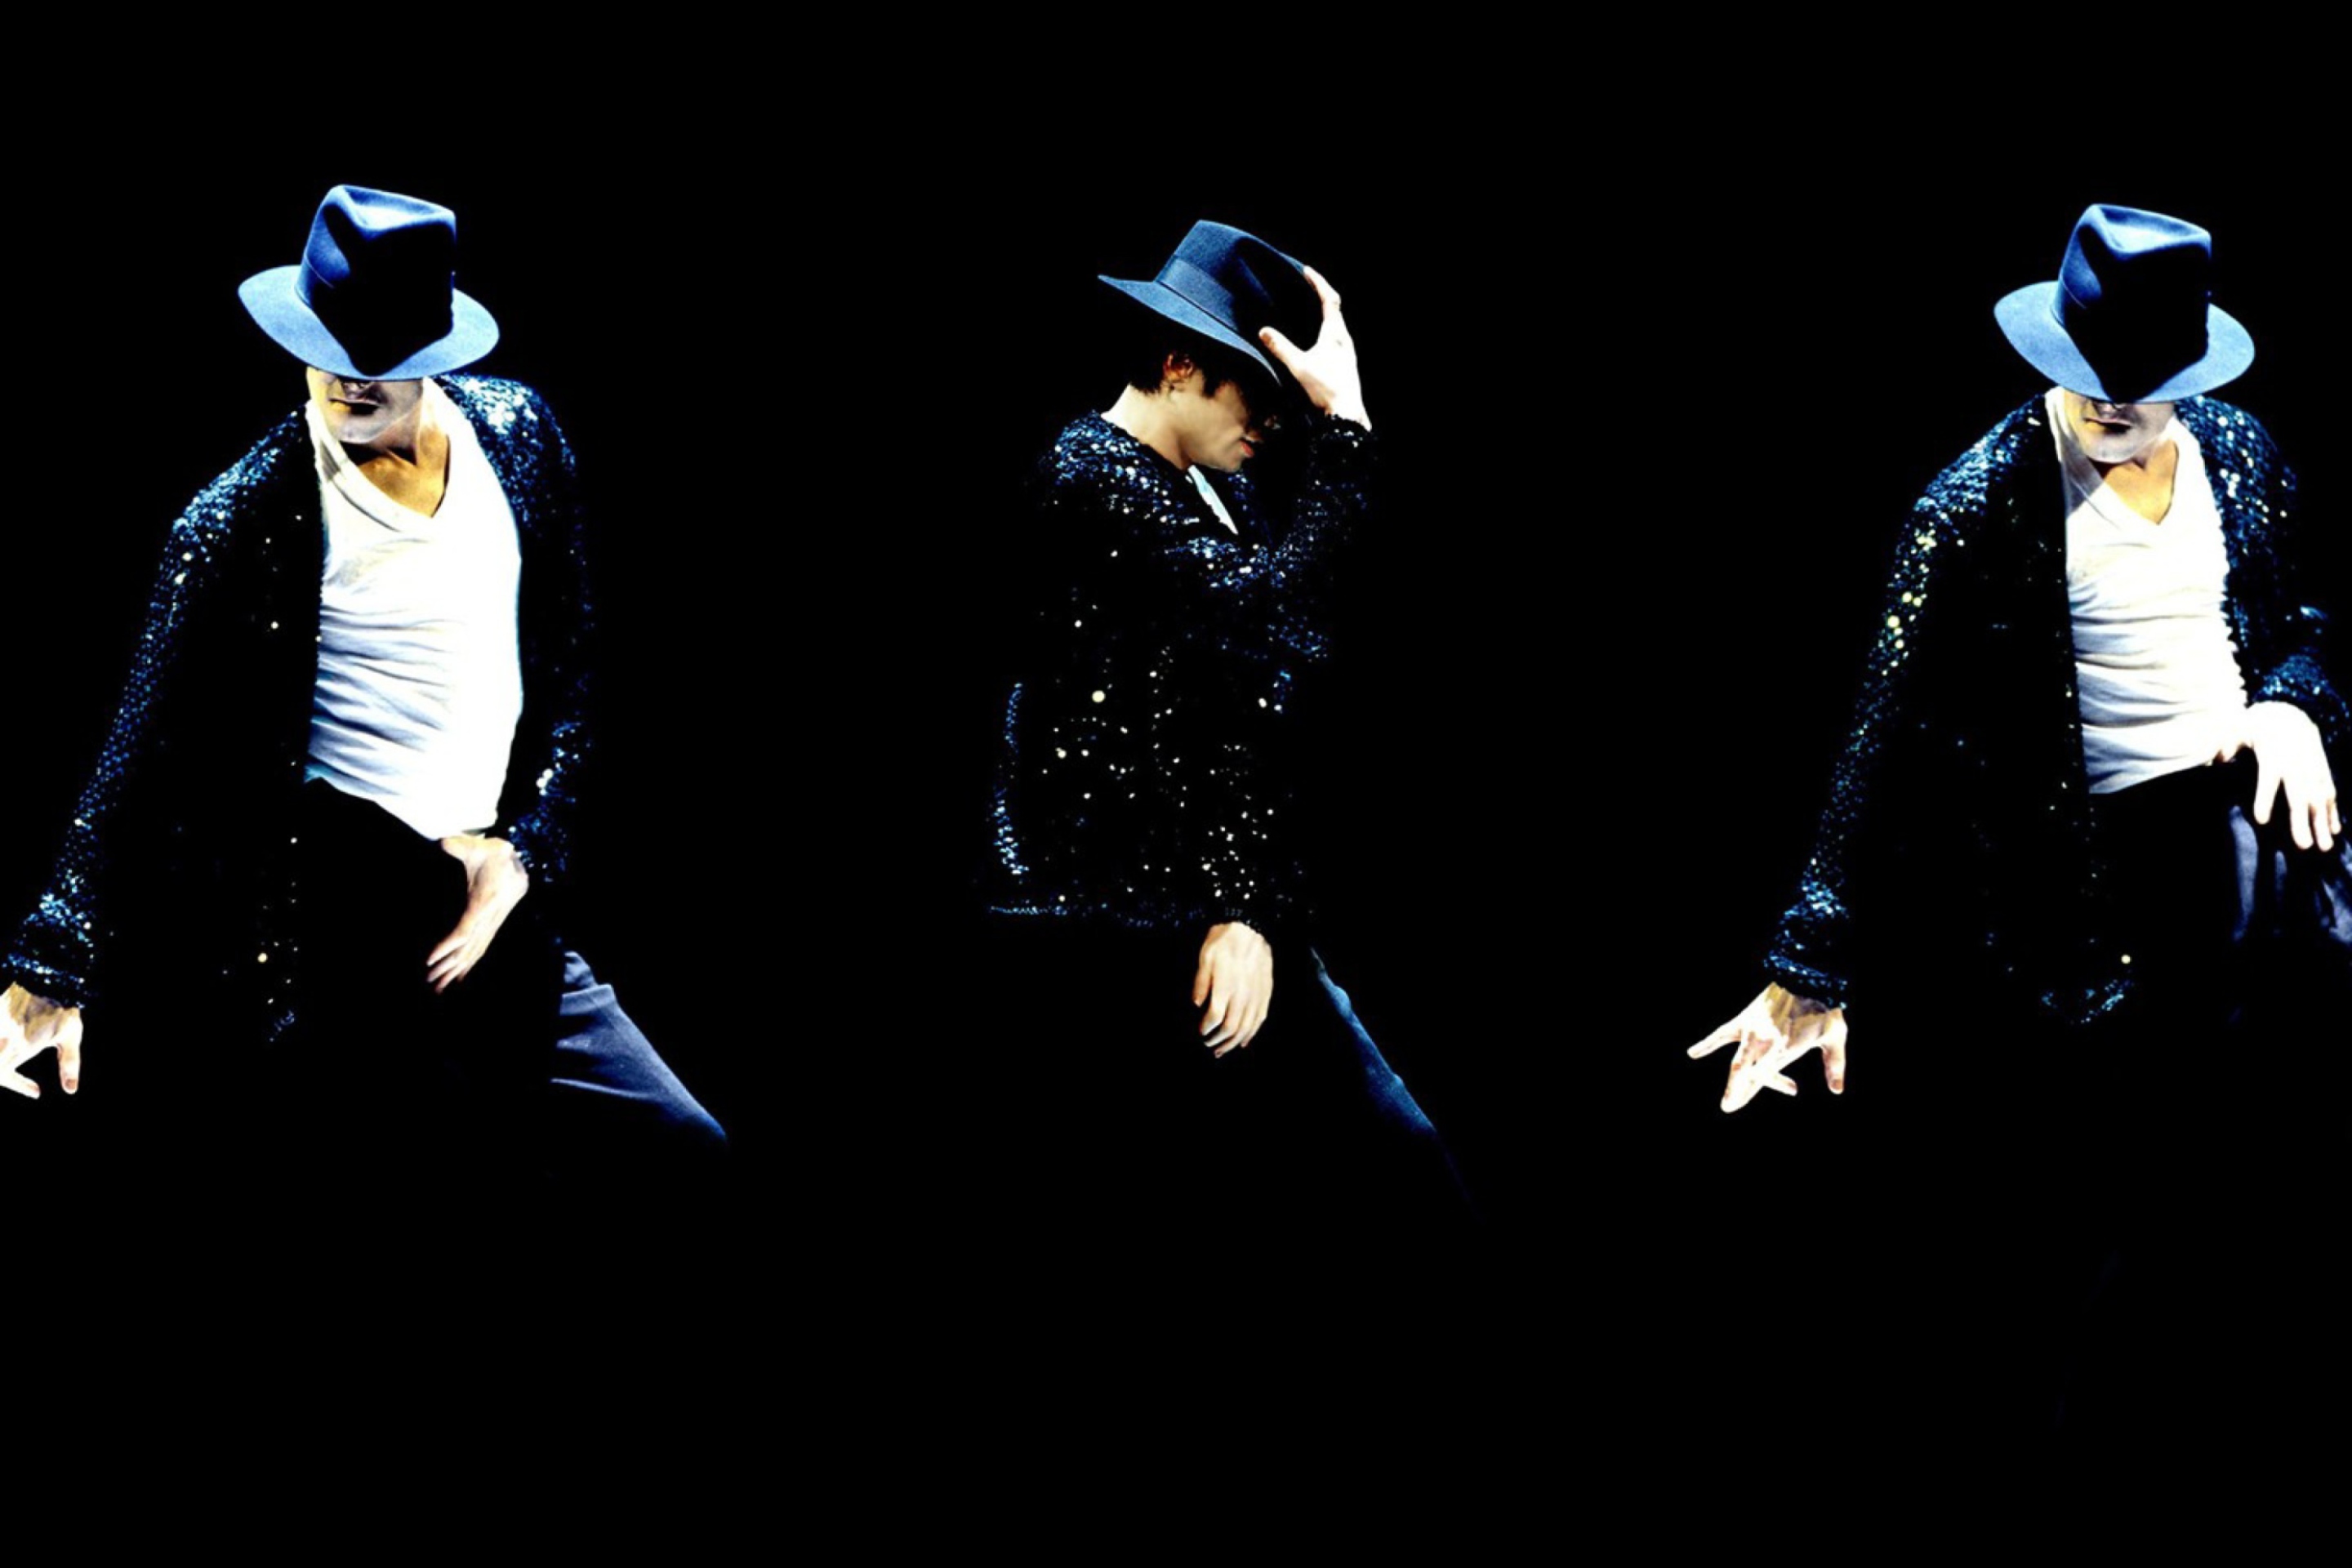 Michael Jackson wallpaper 2880x1920